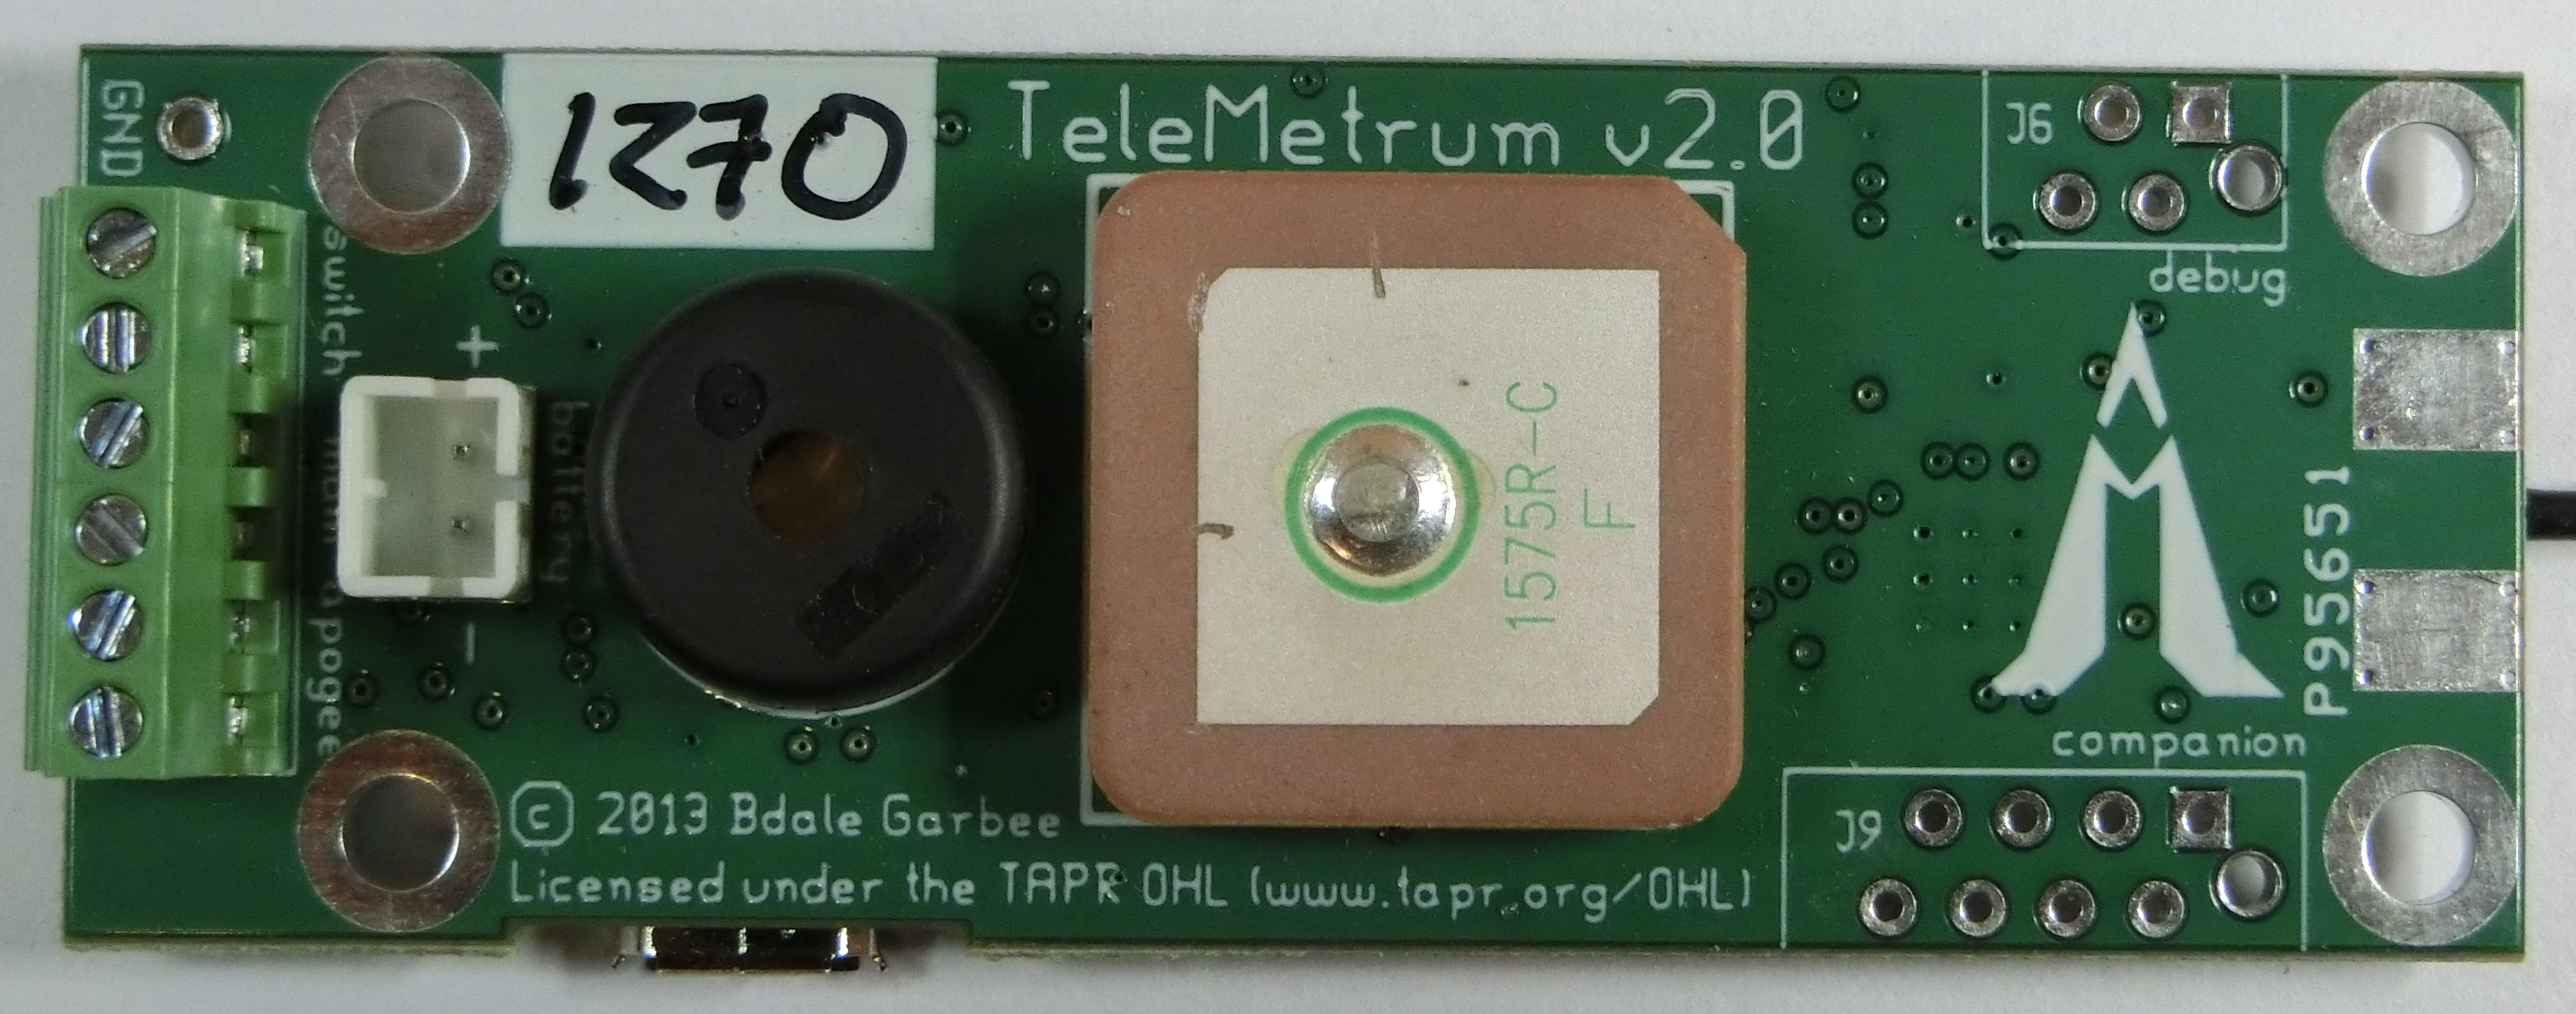 TeleMetrum v2 Board